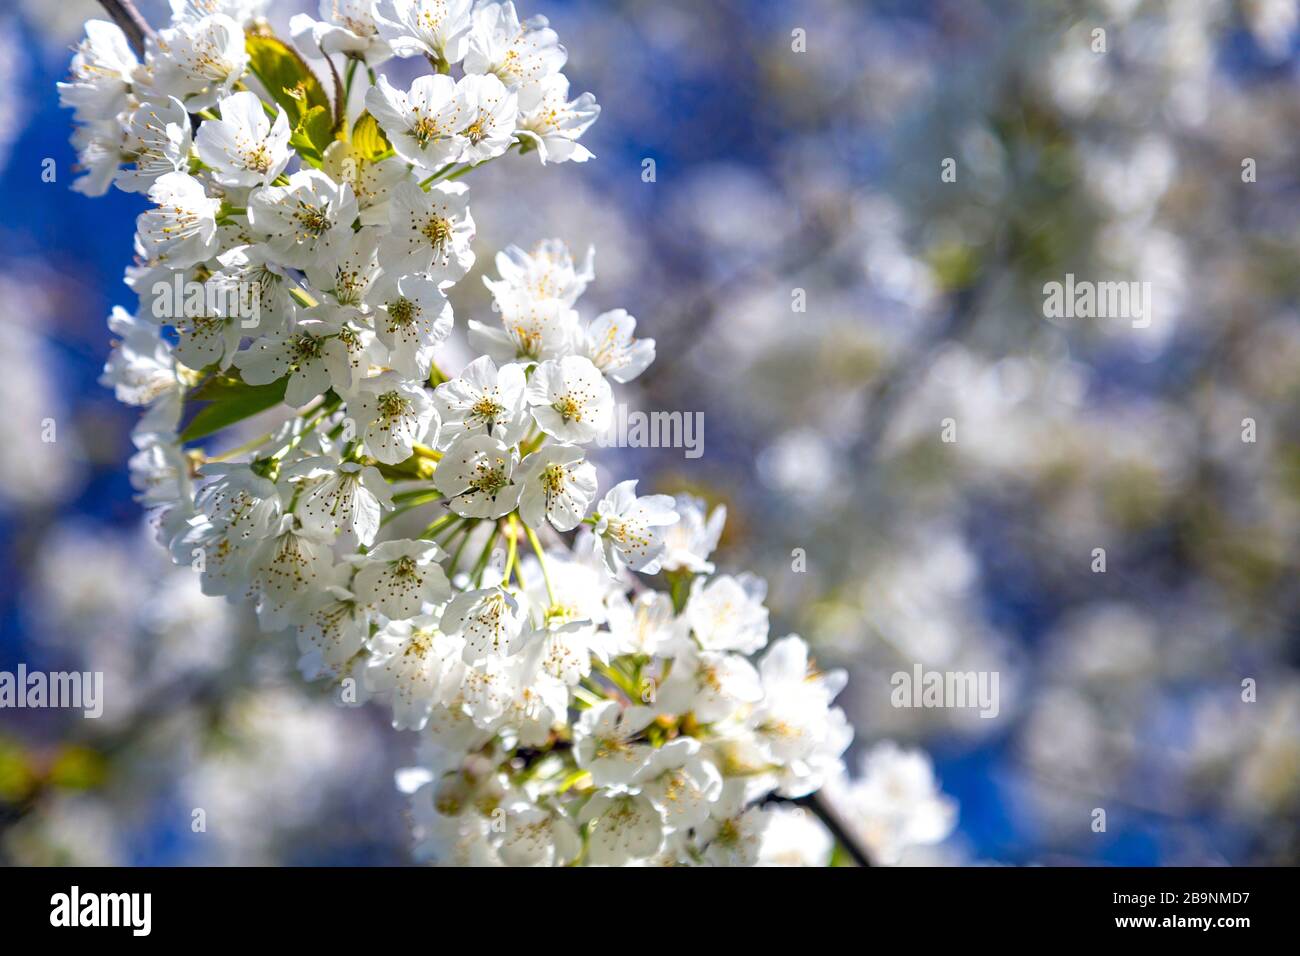 22 mars 2020 - Londres, Royaume-Uni, le printemps arrive à Londres alors que le Royaume-Uni s'arrête en raison de la pandémie de coronavirus, les fleurs blanches sur un arbre Banque D'Images